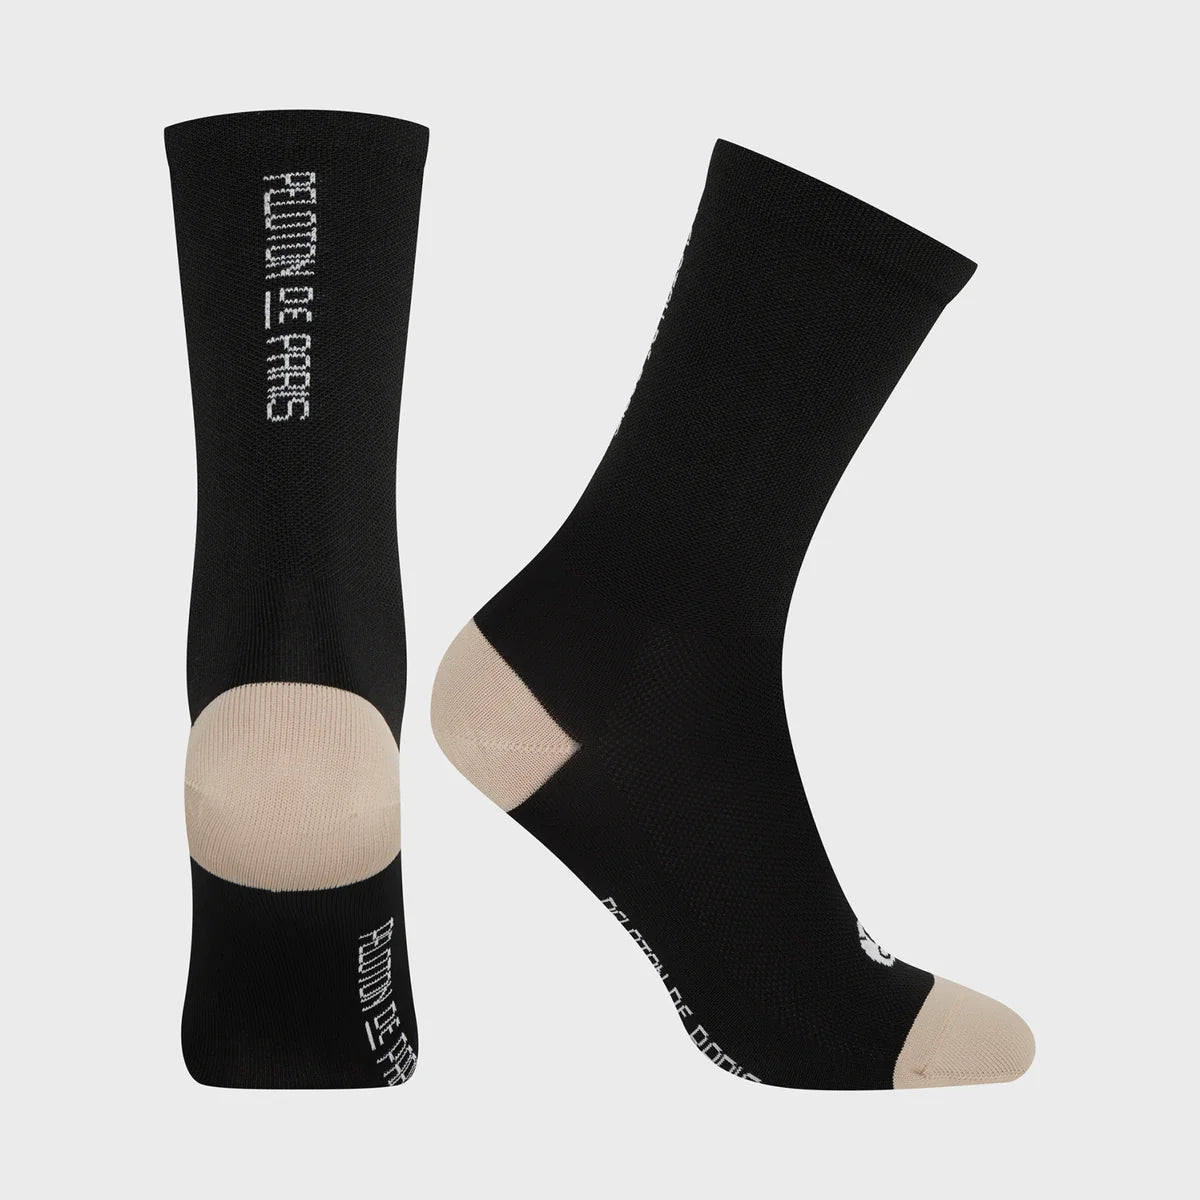 Peloton Cycling Socks - Black